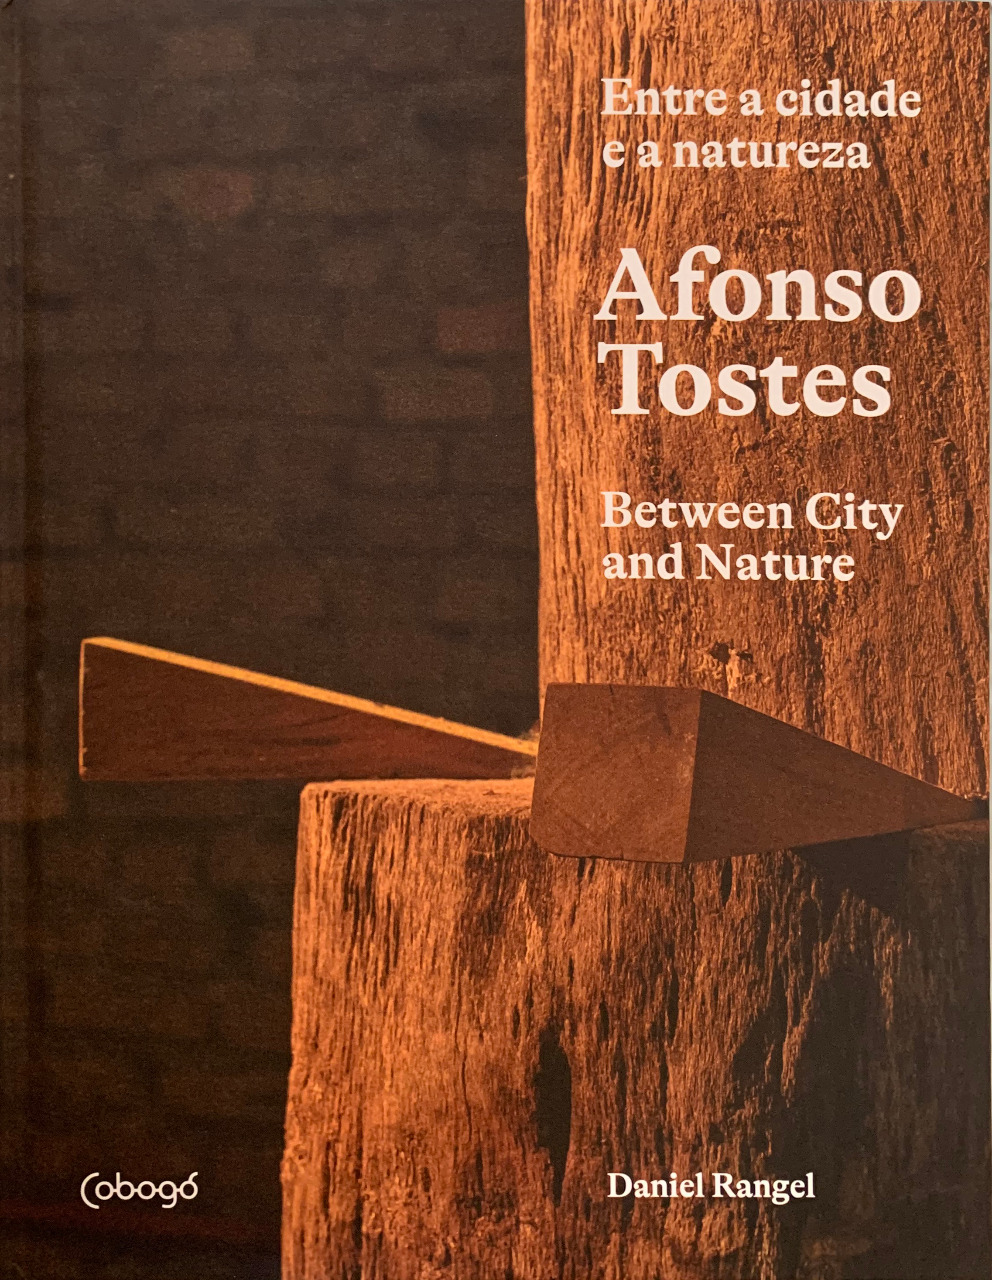 Libro "Afonso Tostes: Tra città e natura", copertura. Rivelazione.